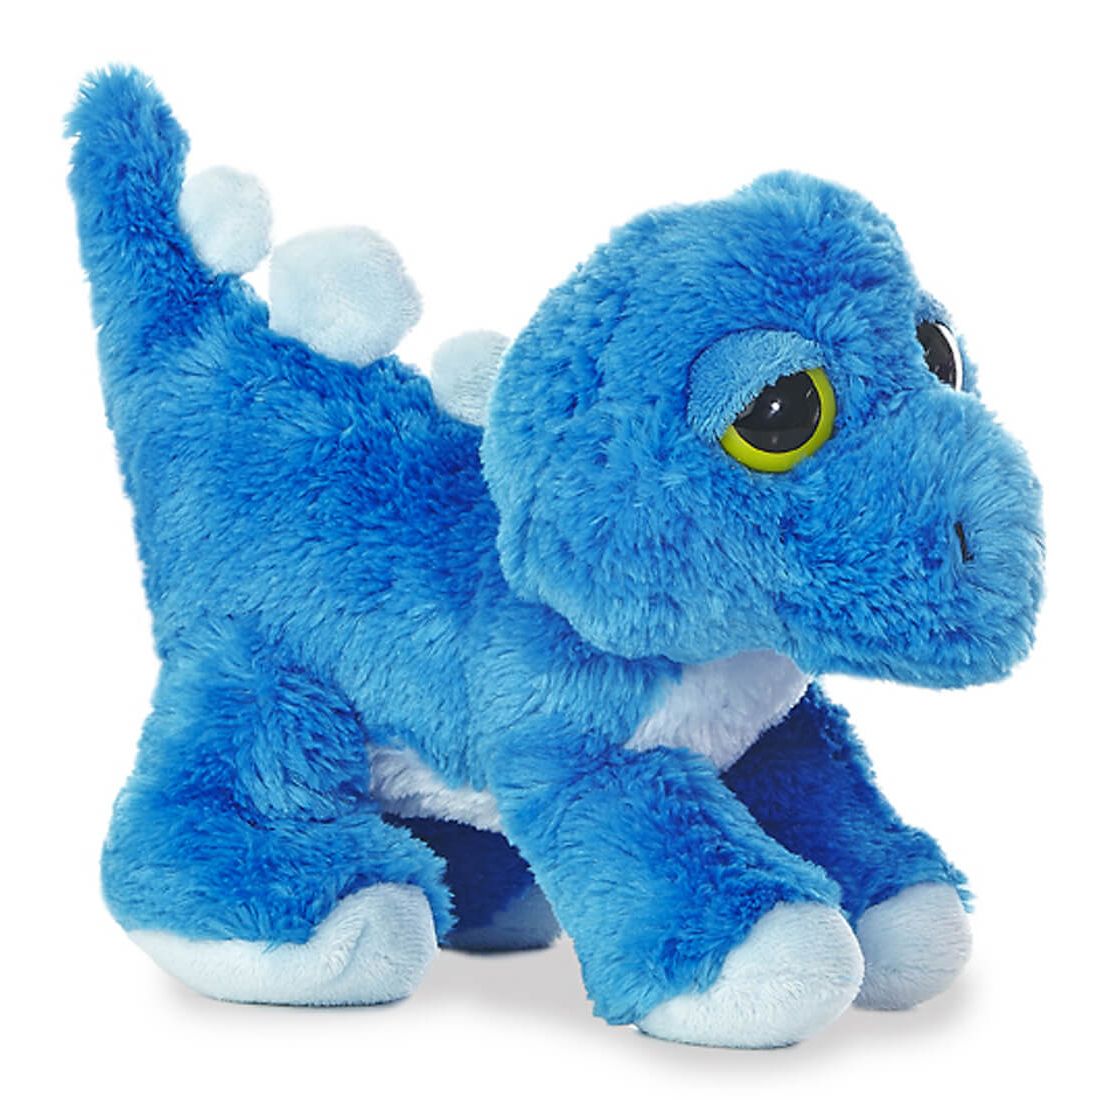 blue dinosaur plush